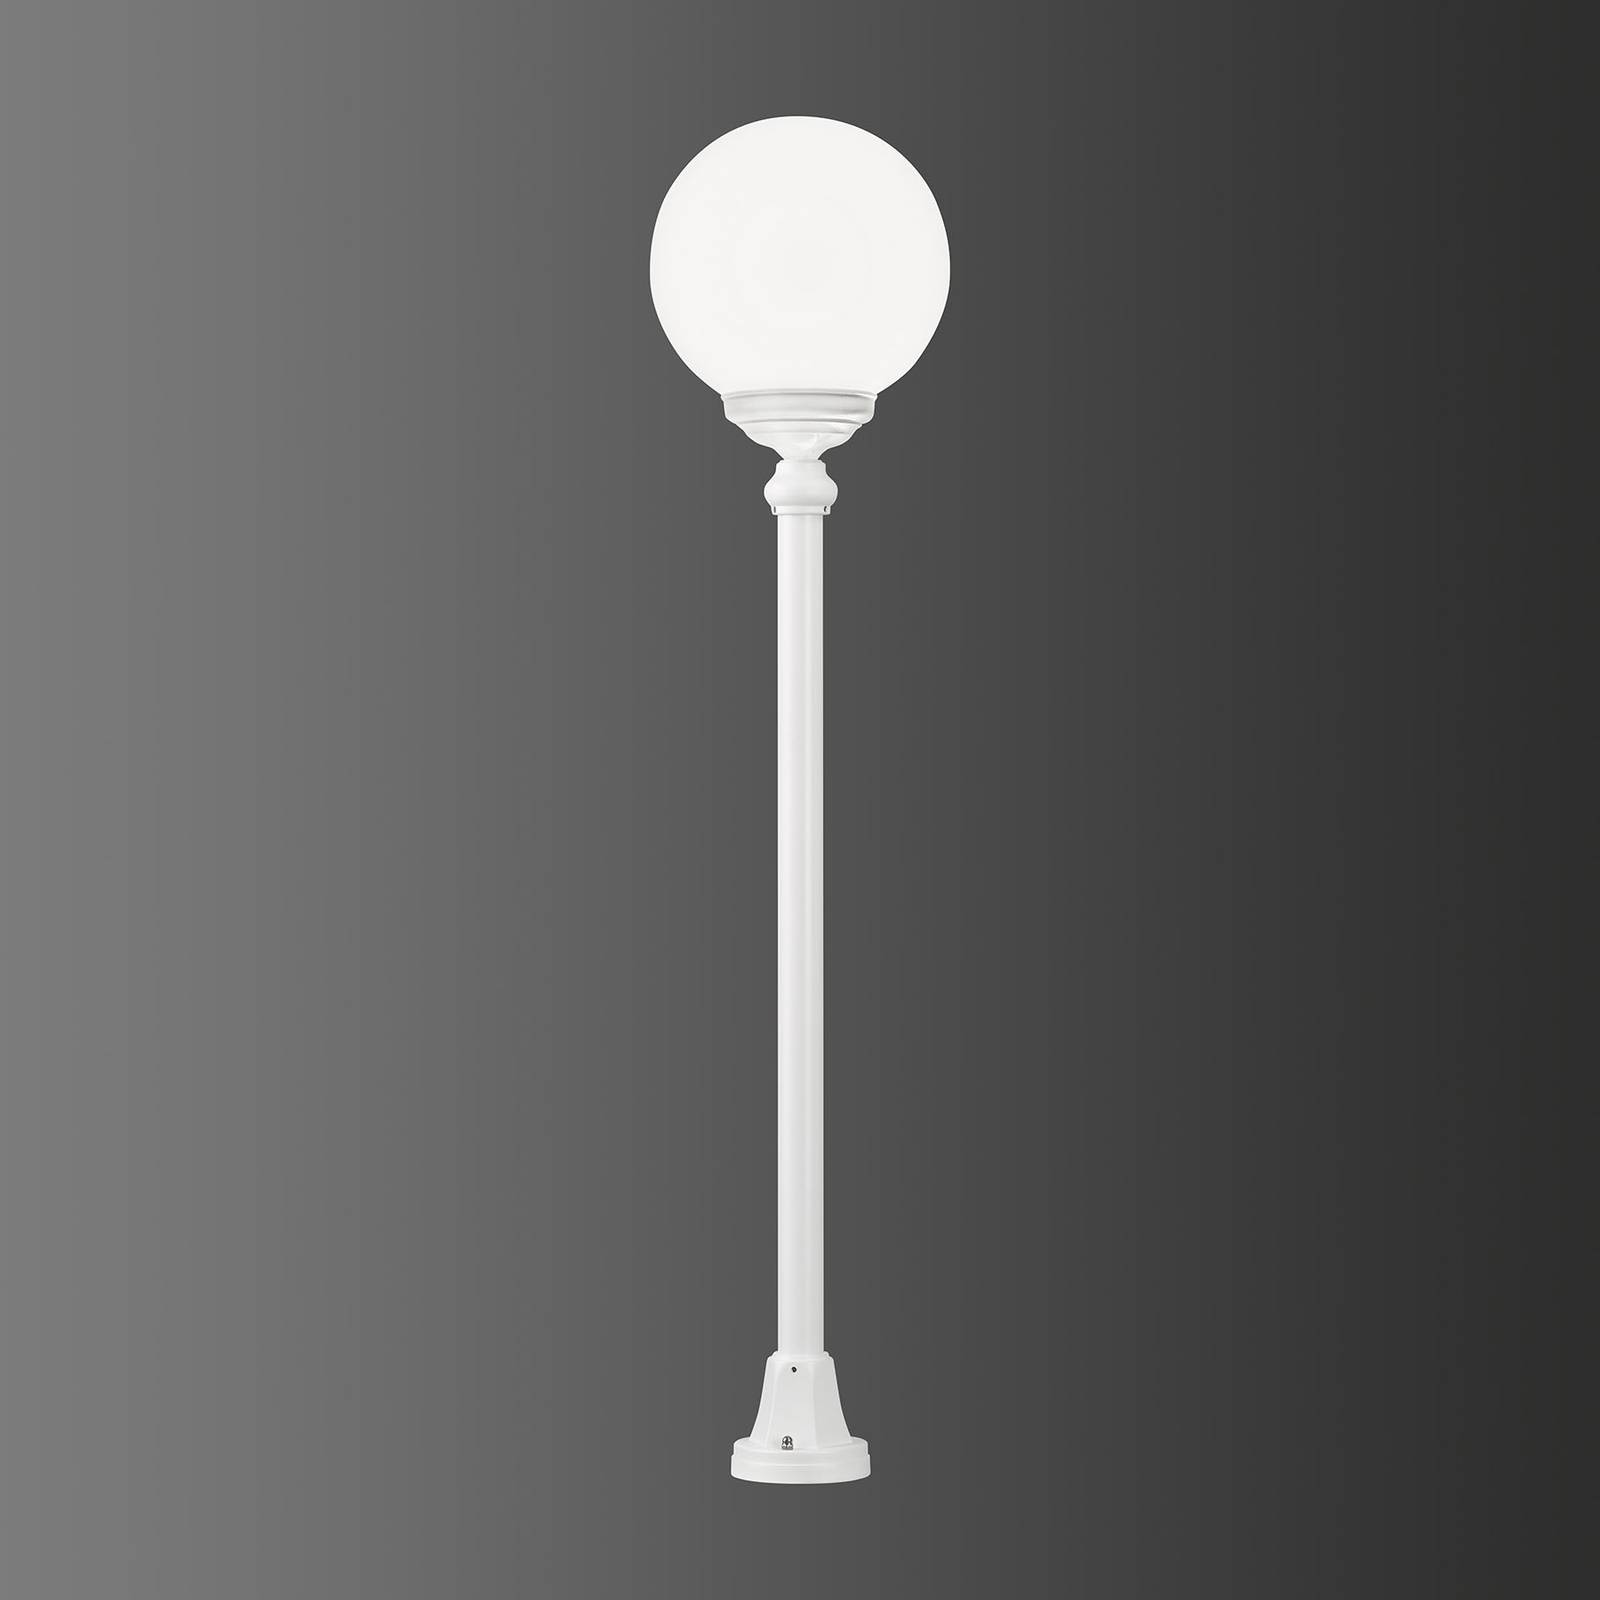 1132-es ösvény lámpa gömb alakú ernyővel, fehér